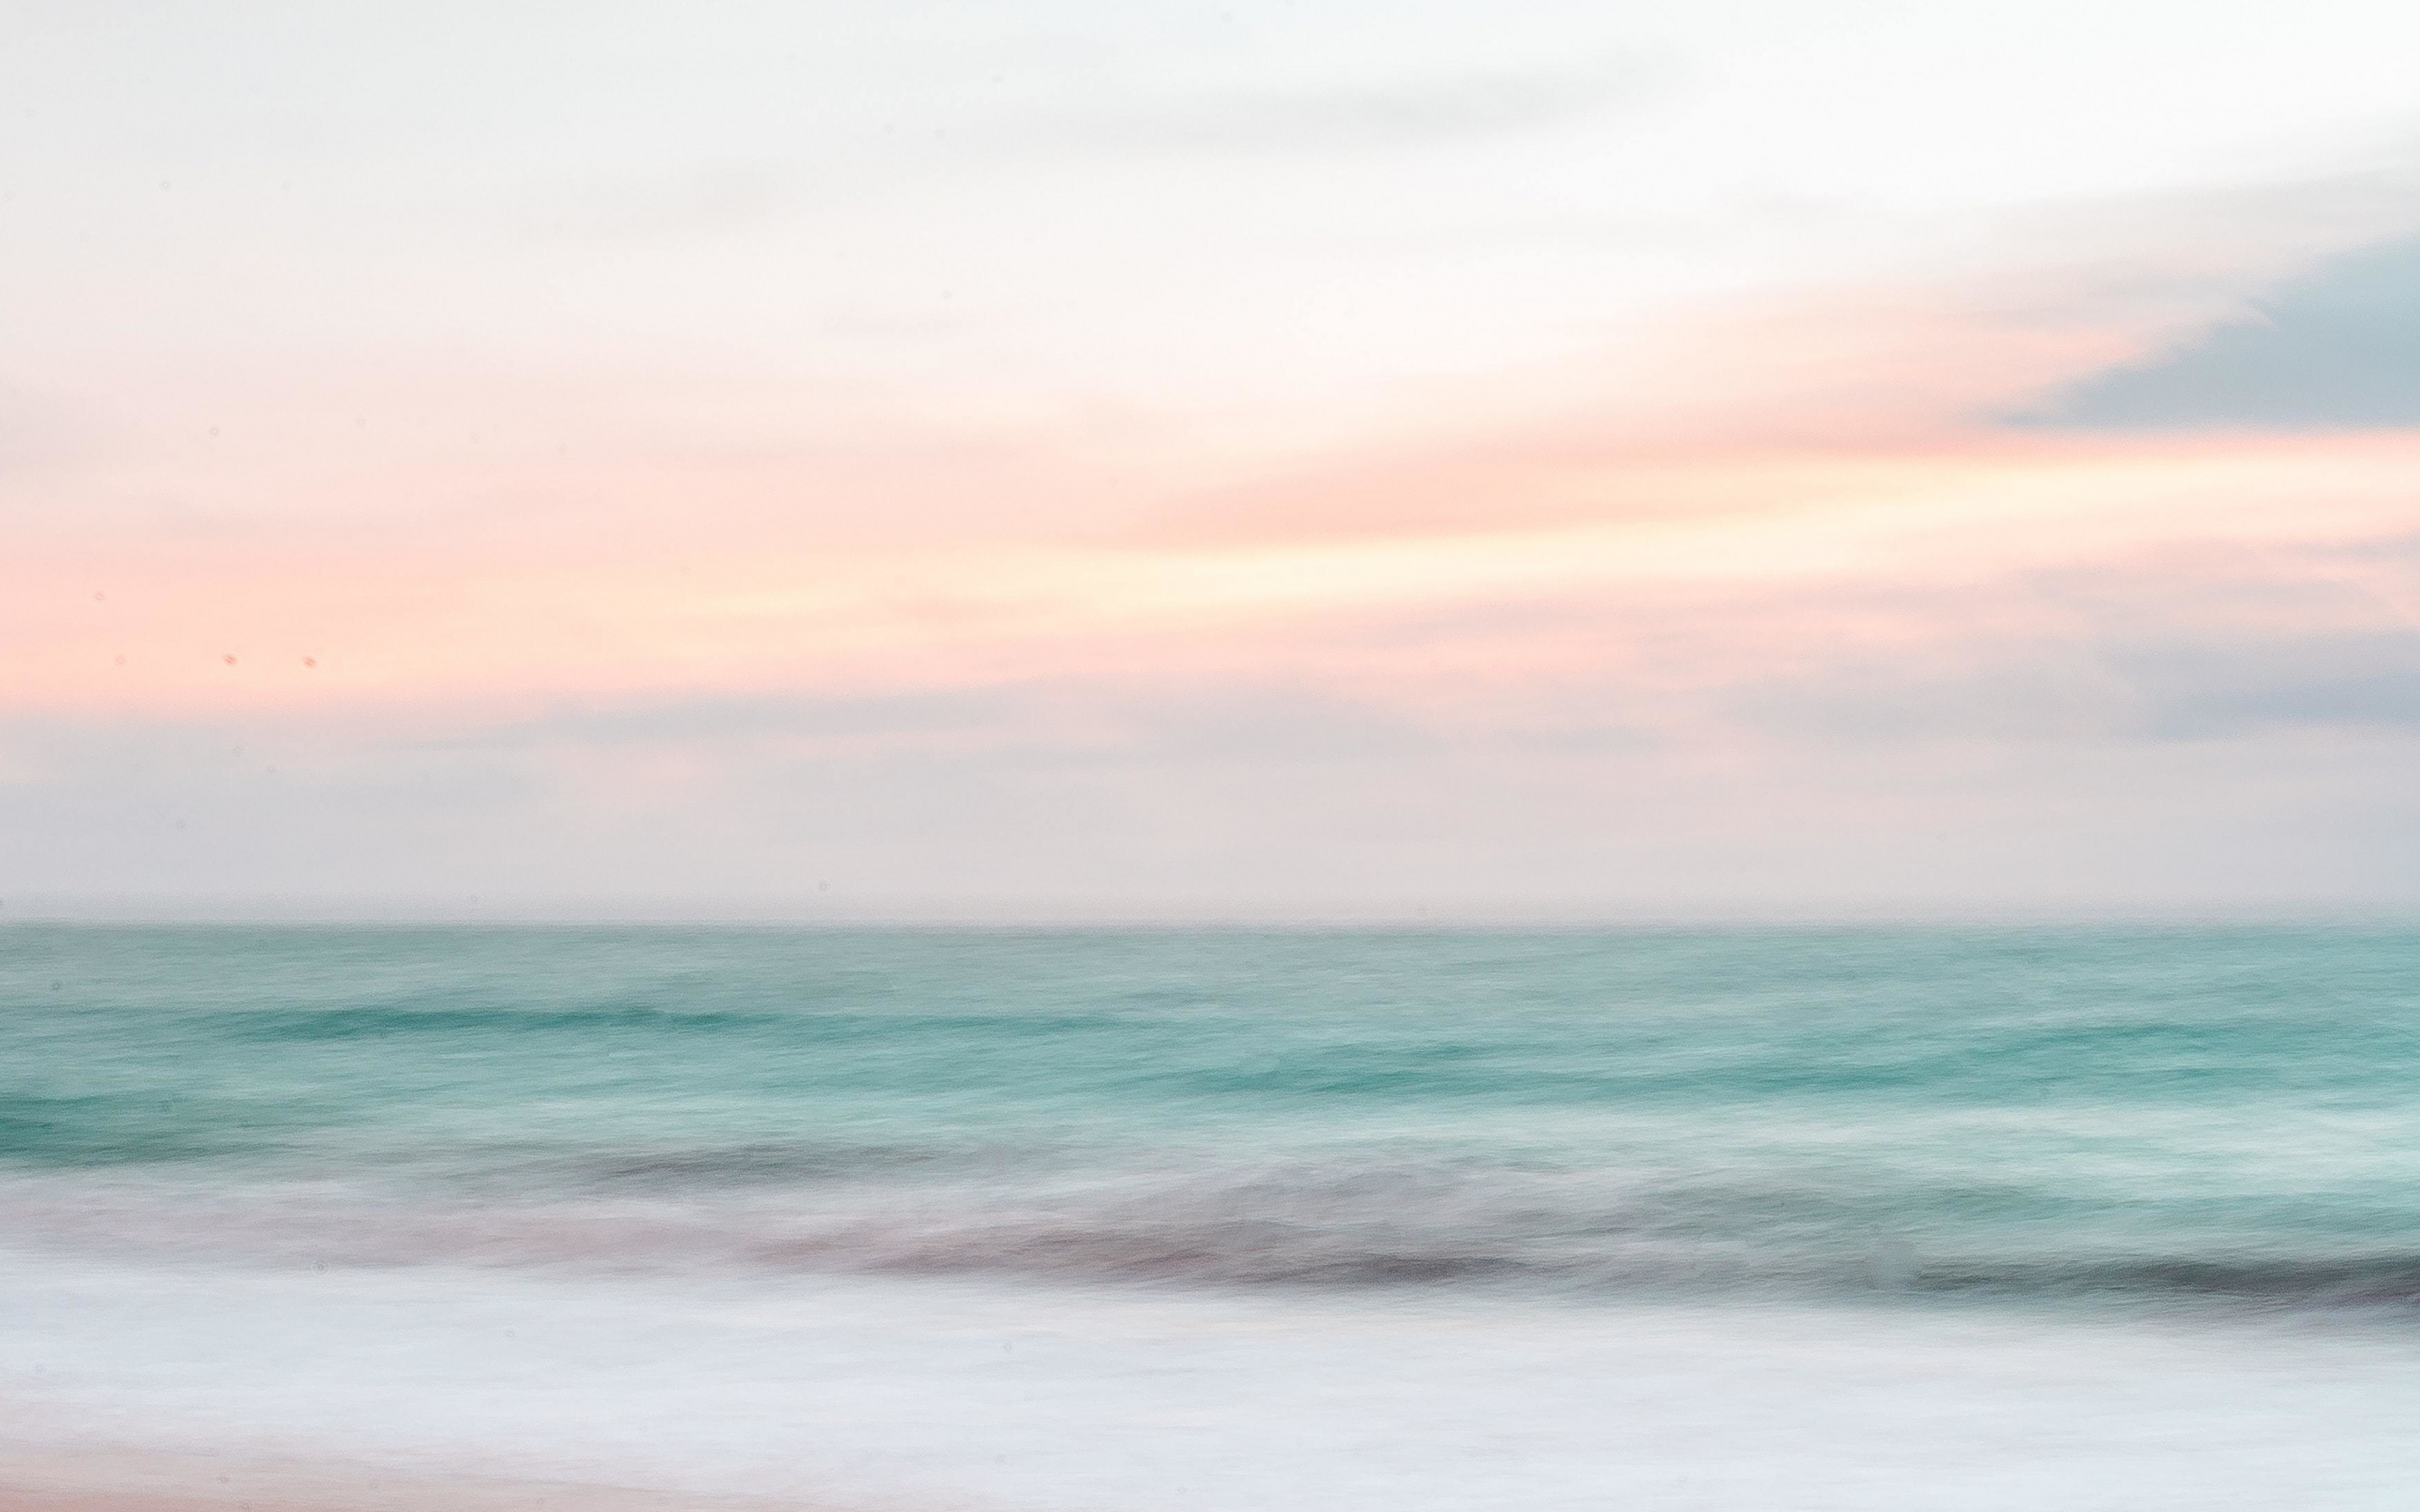 Blur, seashore, seawaves, 2880x1800 wallpaper